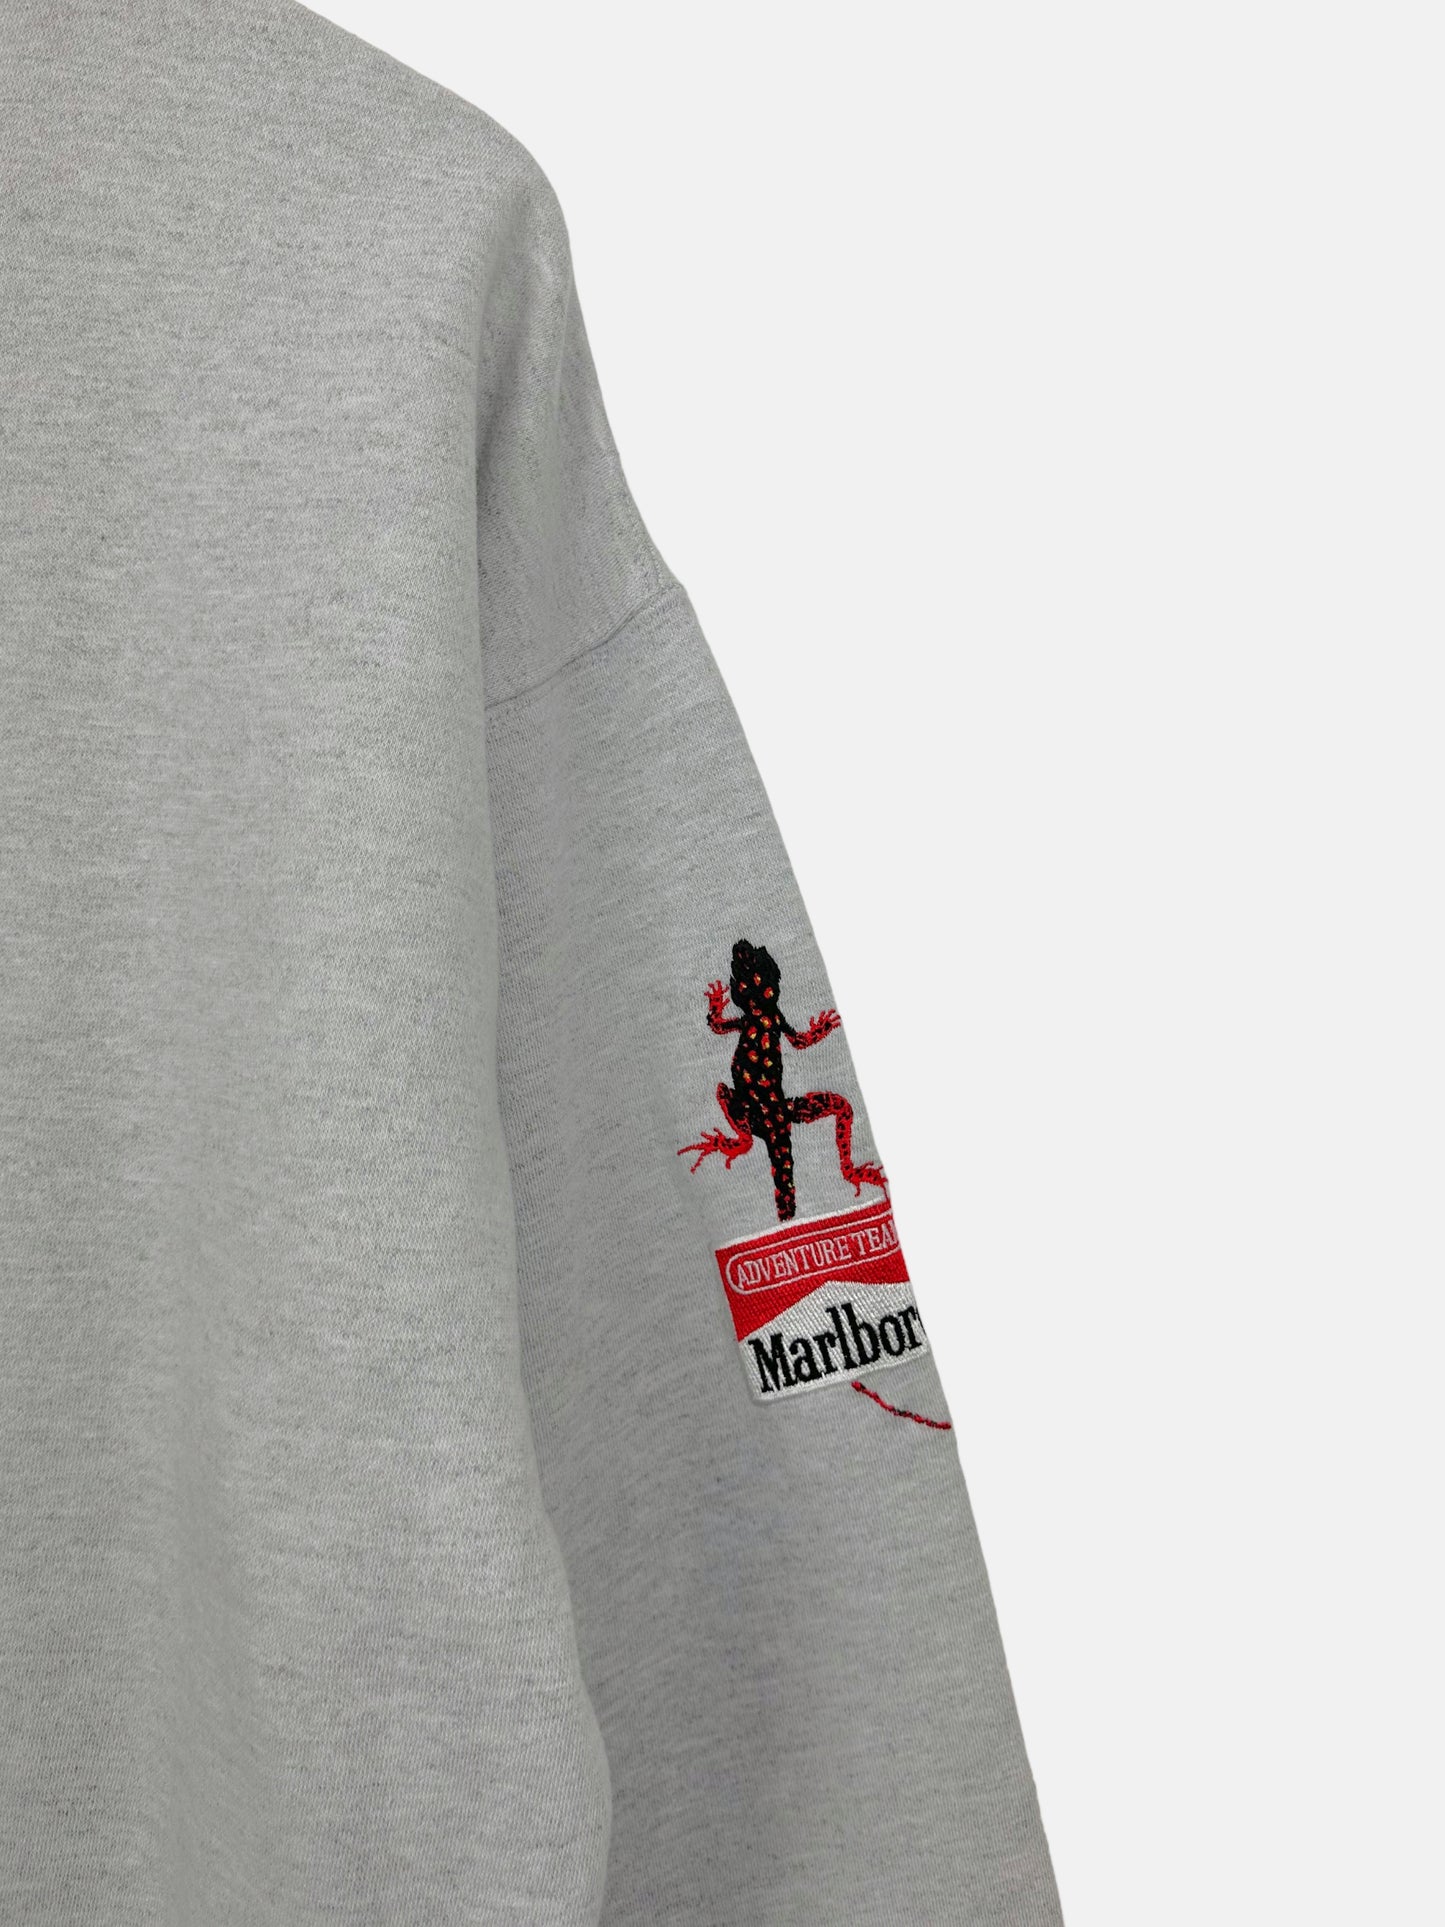 90's Marlboro Adventure Team Embroidered Vintage Sweatshirt Size L